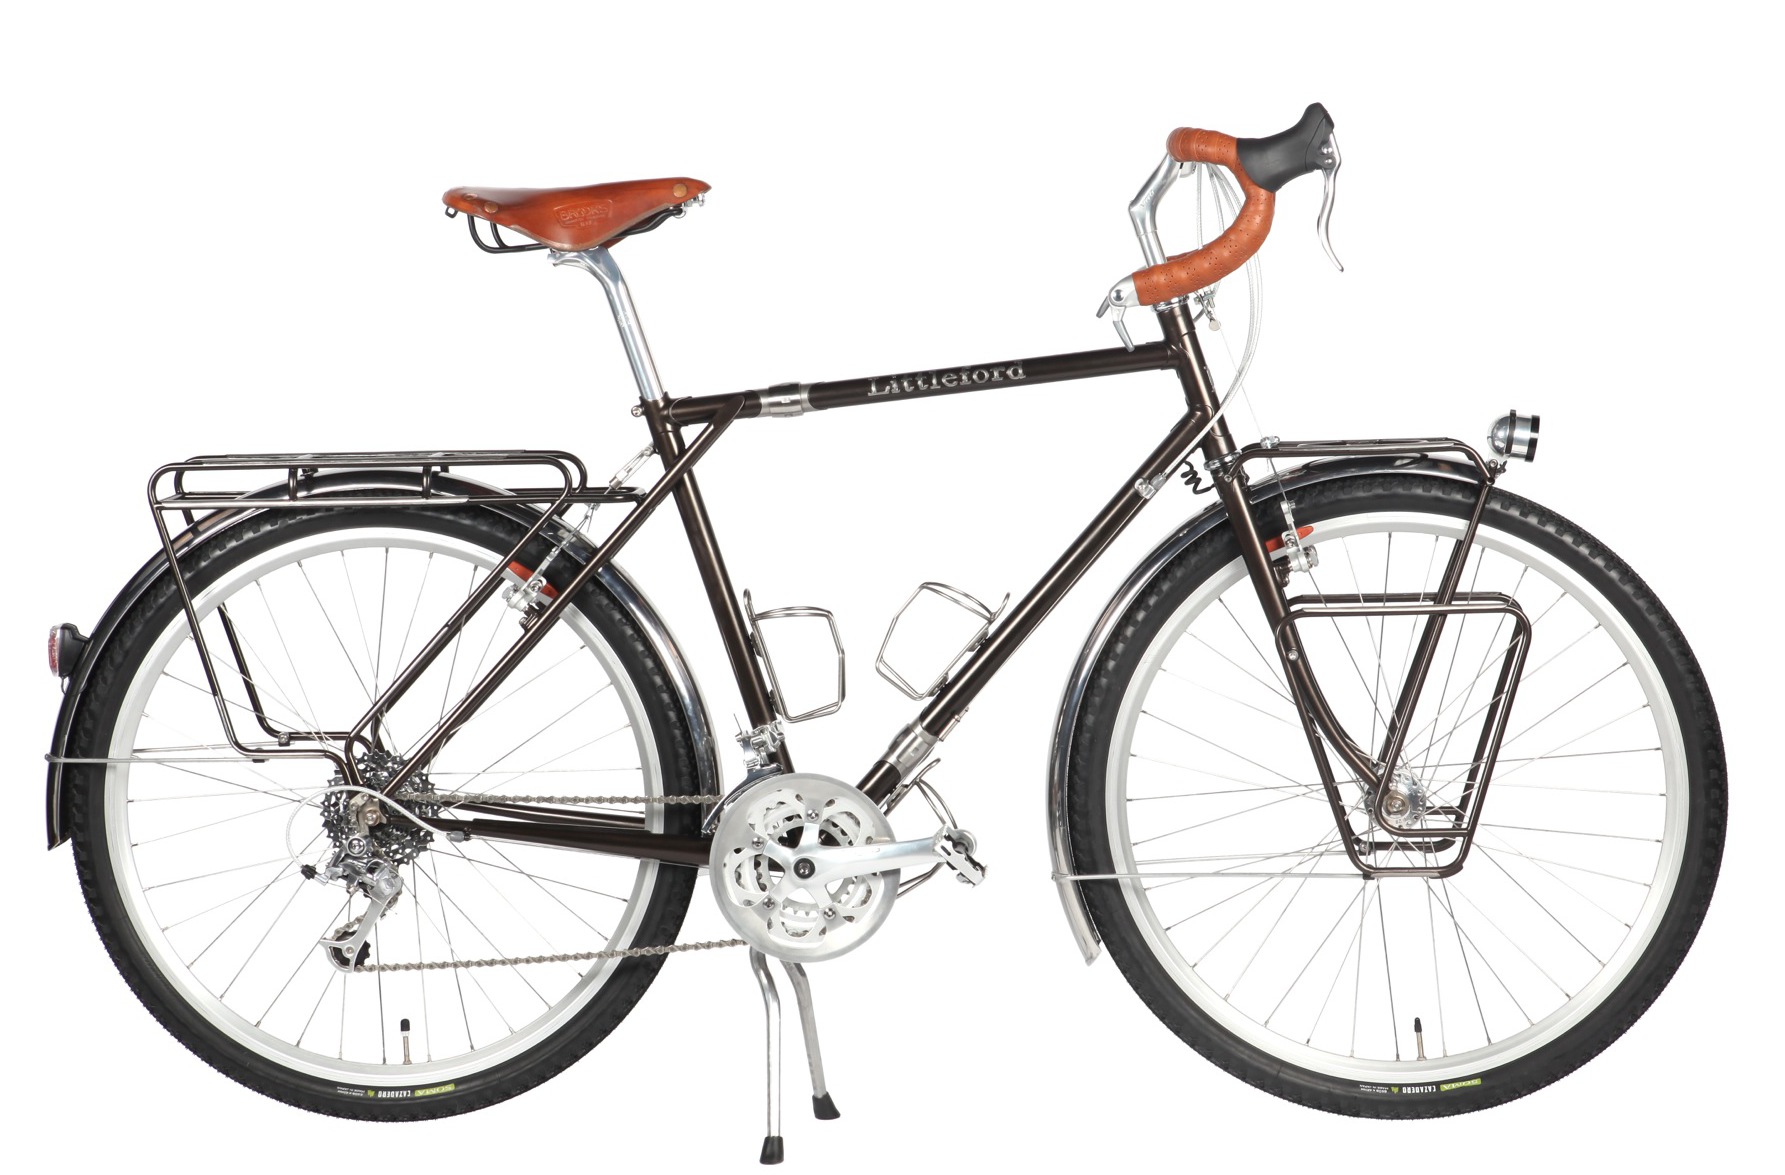 Show Your Vintage MTB Drop Bar Conversions - Page 148 - Bike Forums